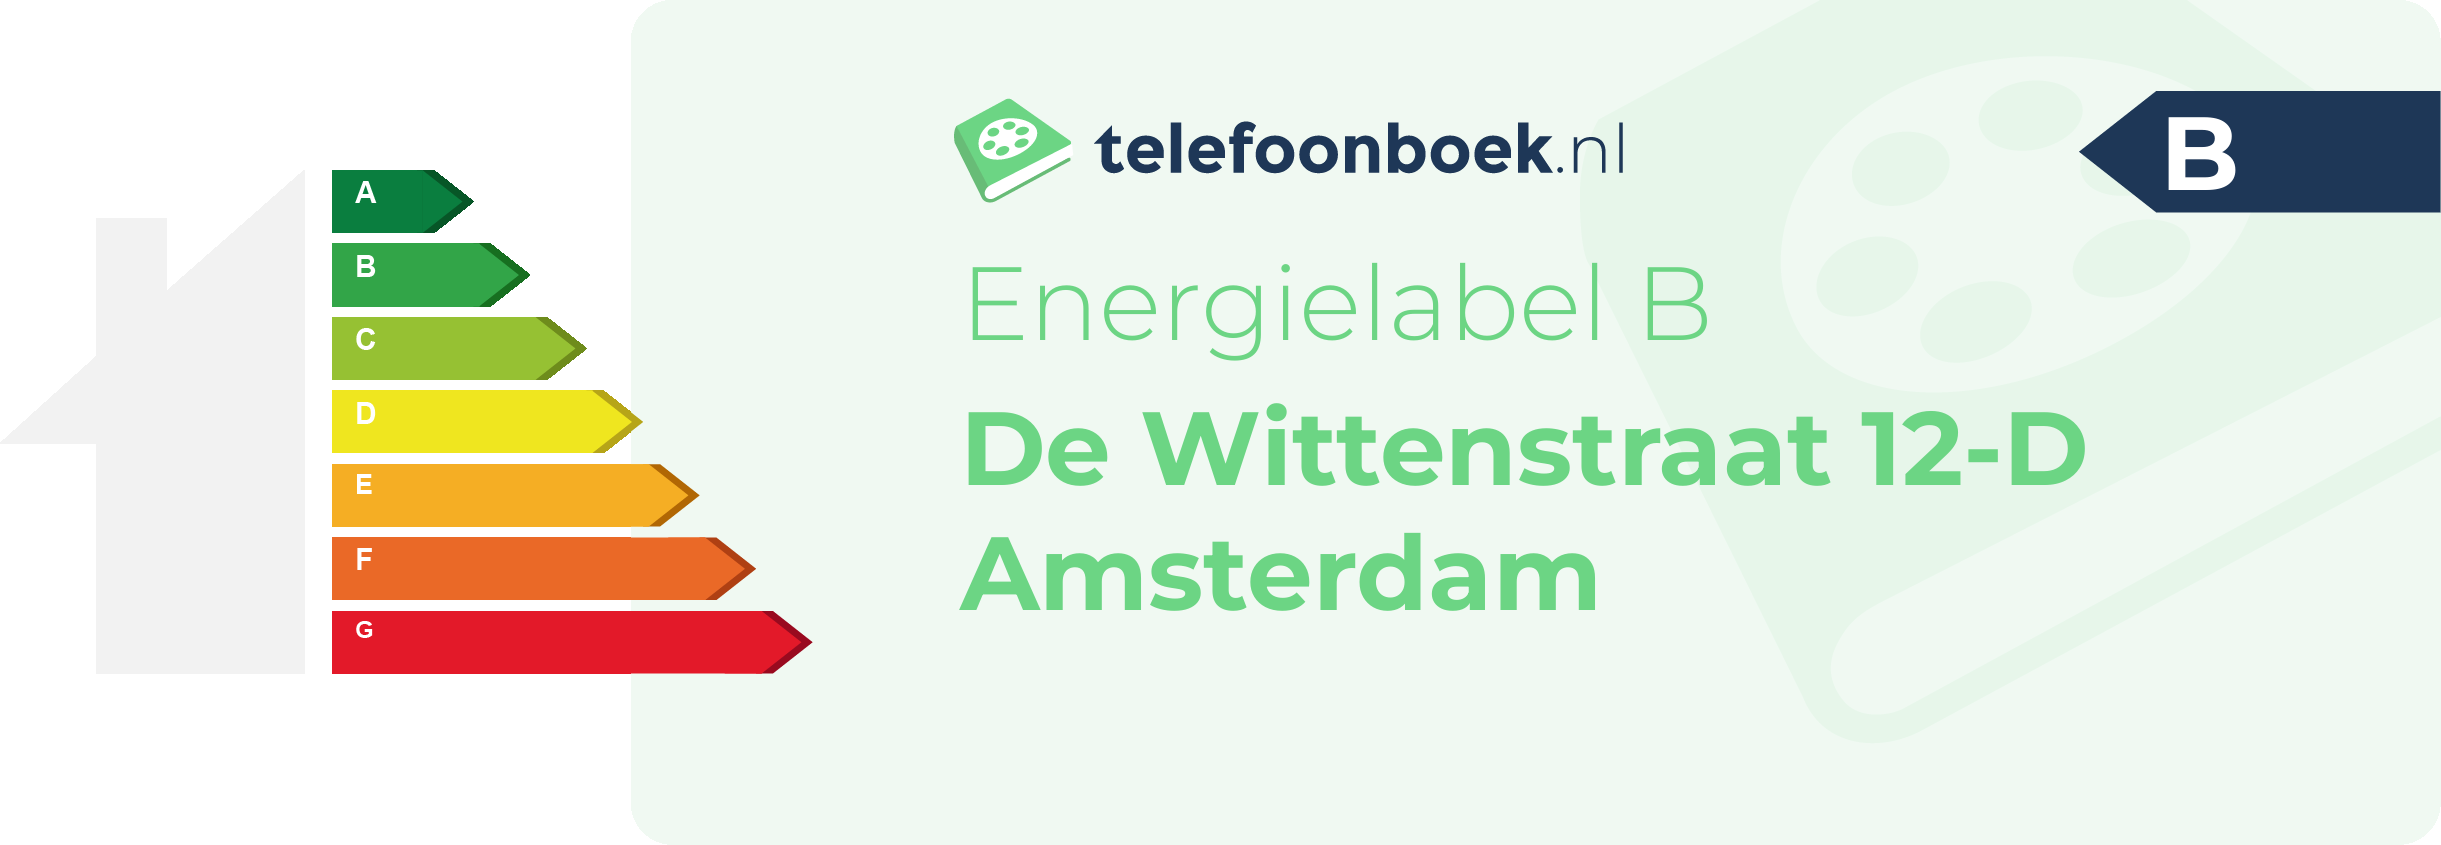 Energielabel De Wittenstraat 12-D Amsterdam